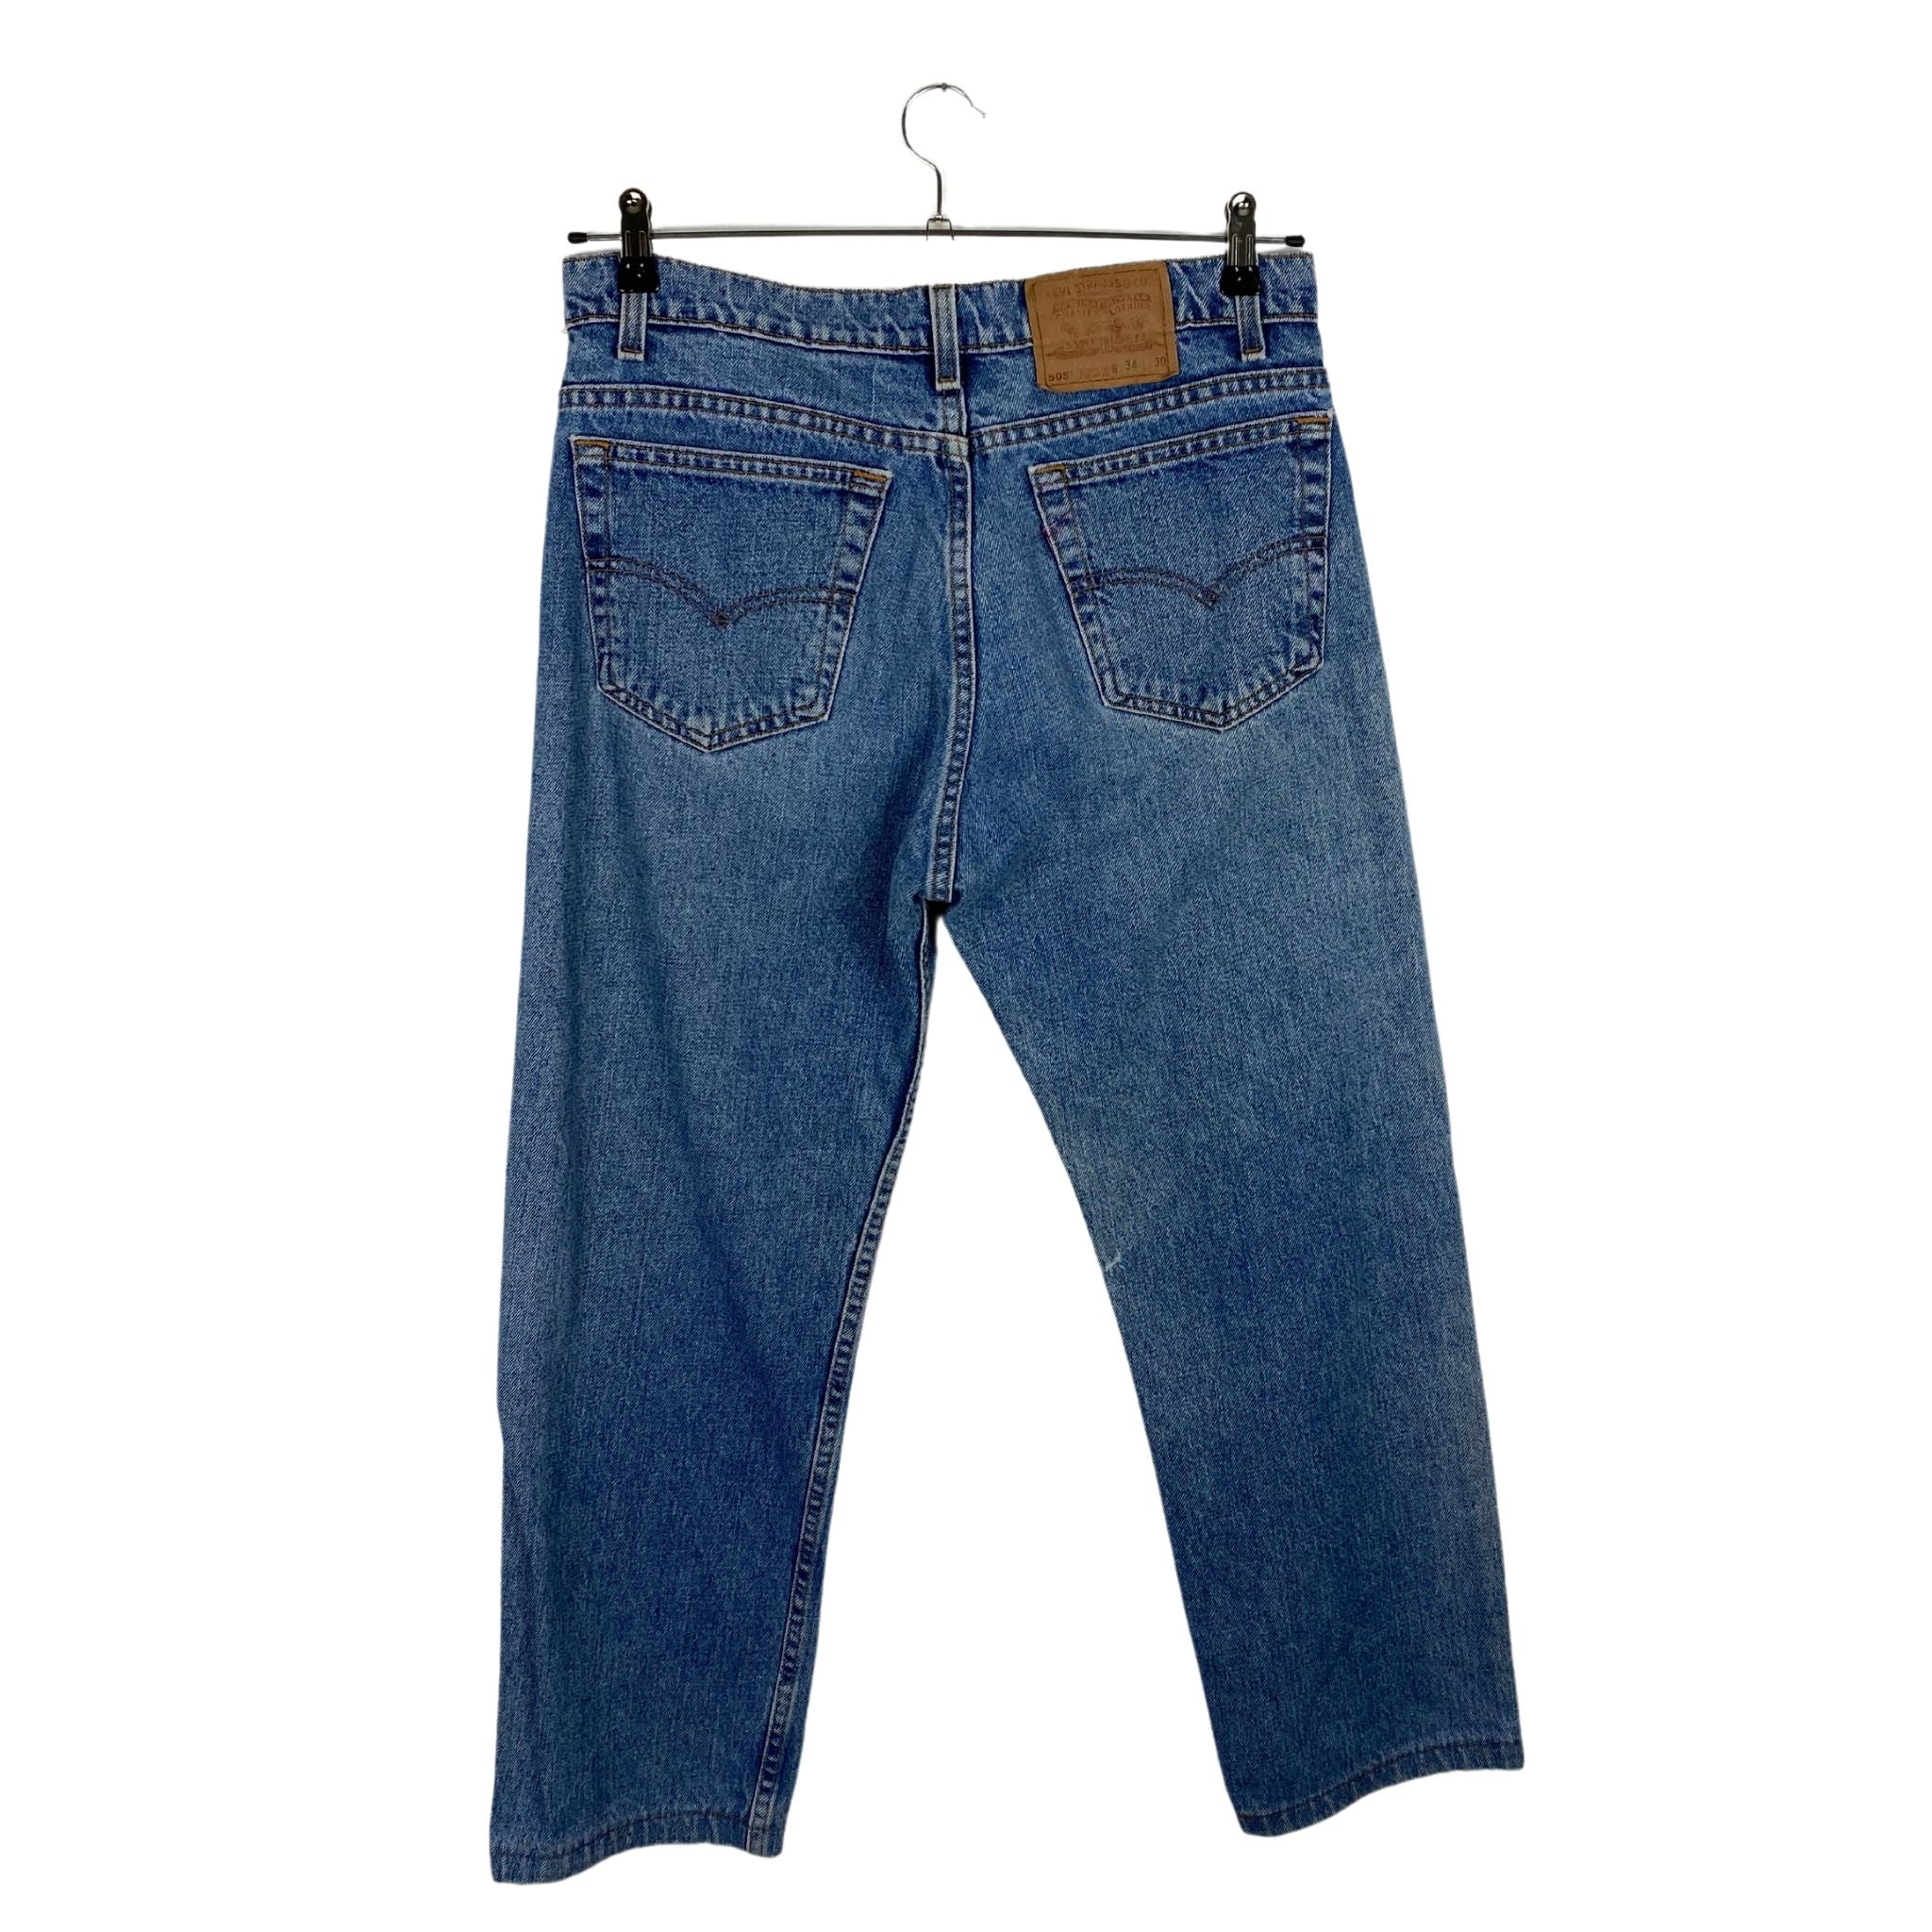 Levi’s 505 Jeans W34 L30 Blau